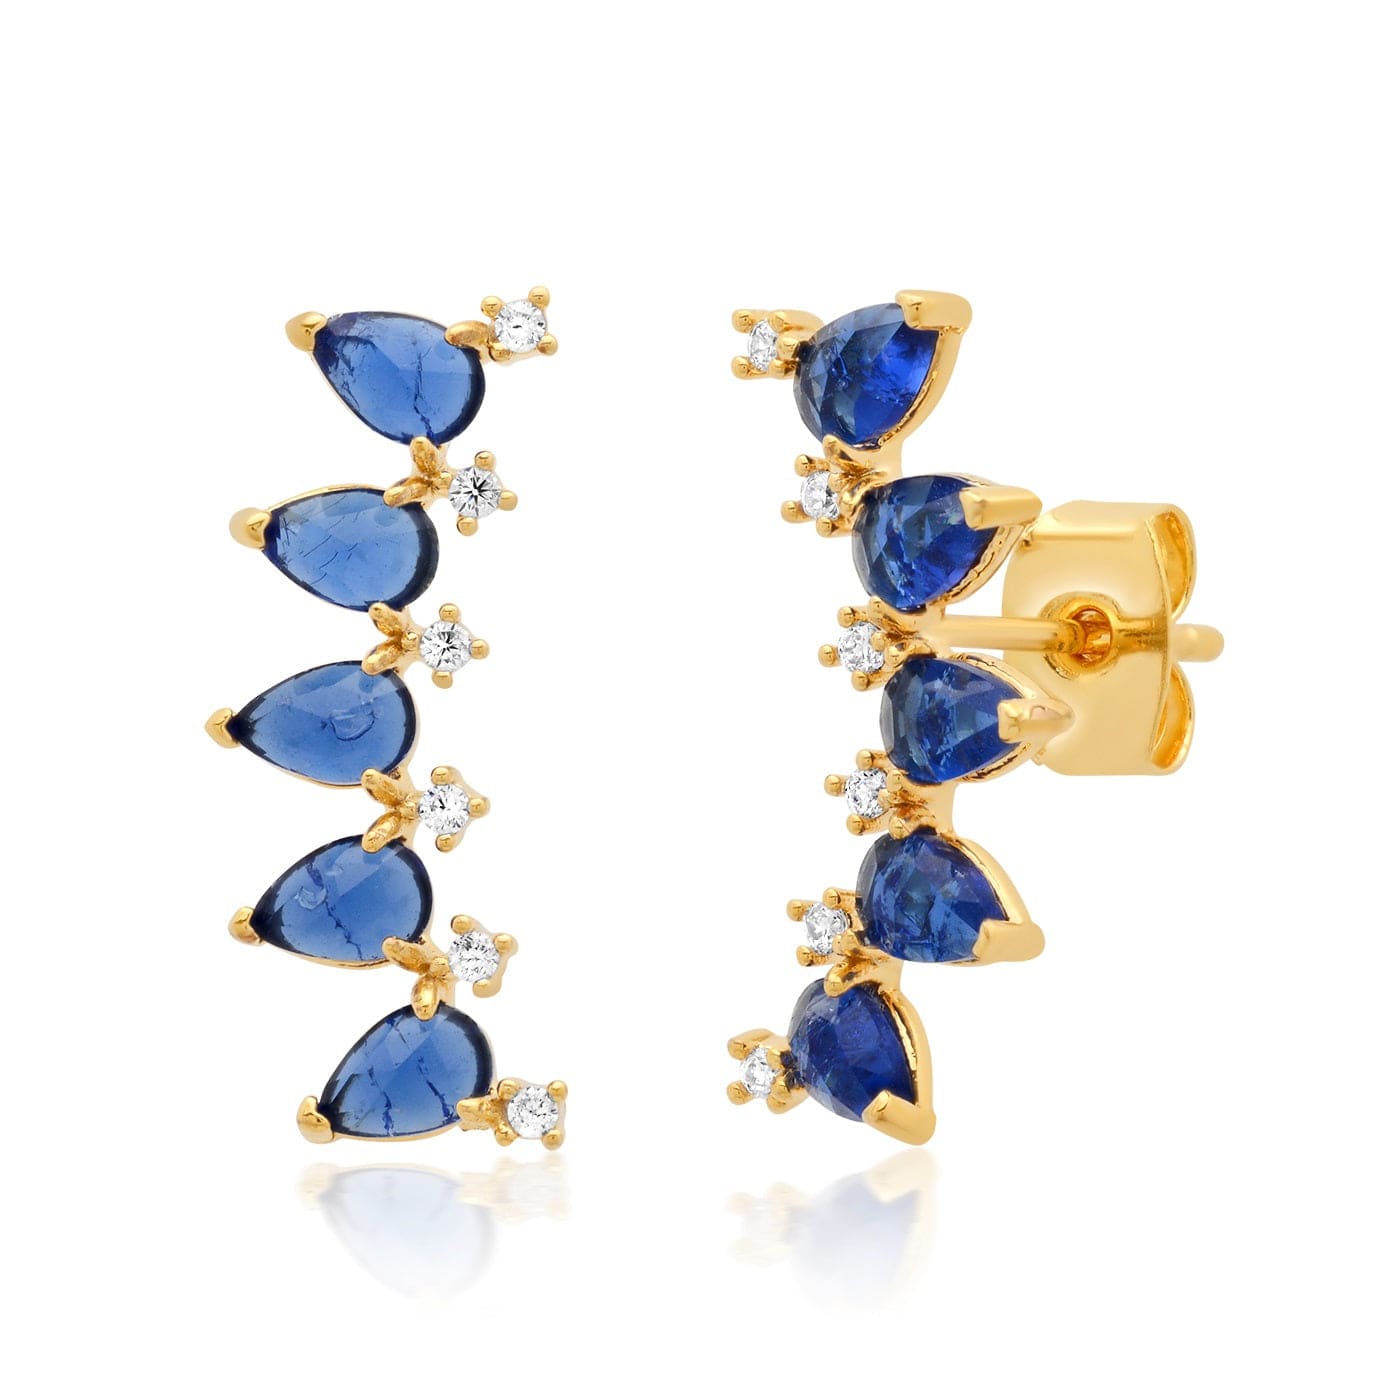 TAI JEWELRY Earrings Blue Rock Crystal Teardrop Stone & Cz Crawler Earrings